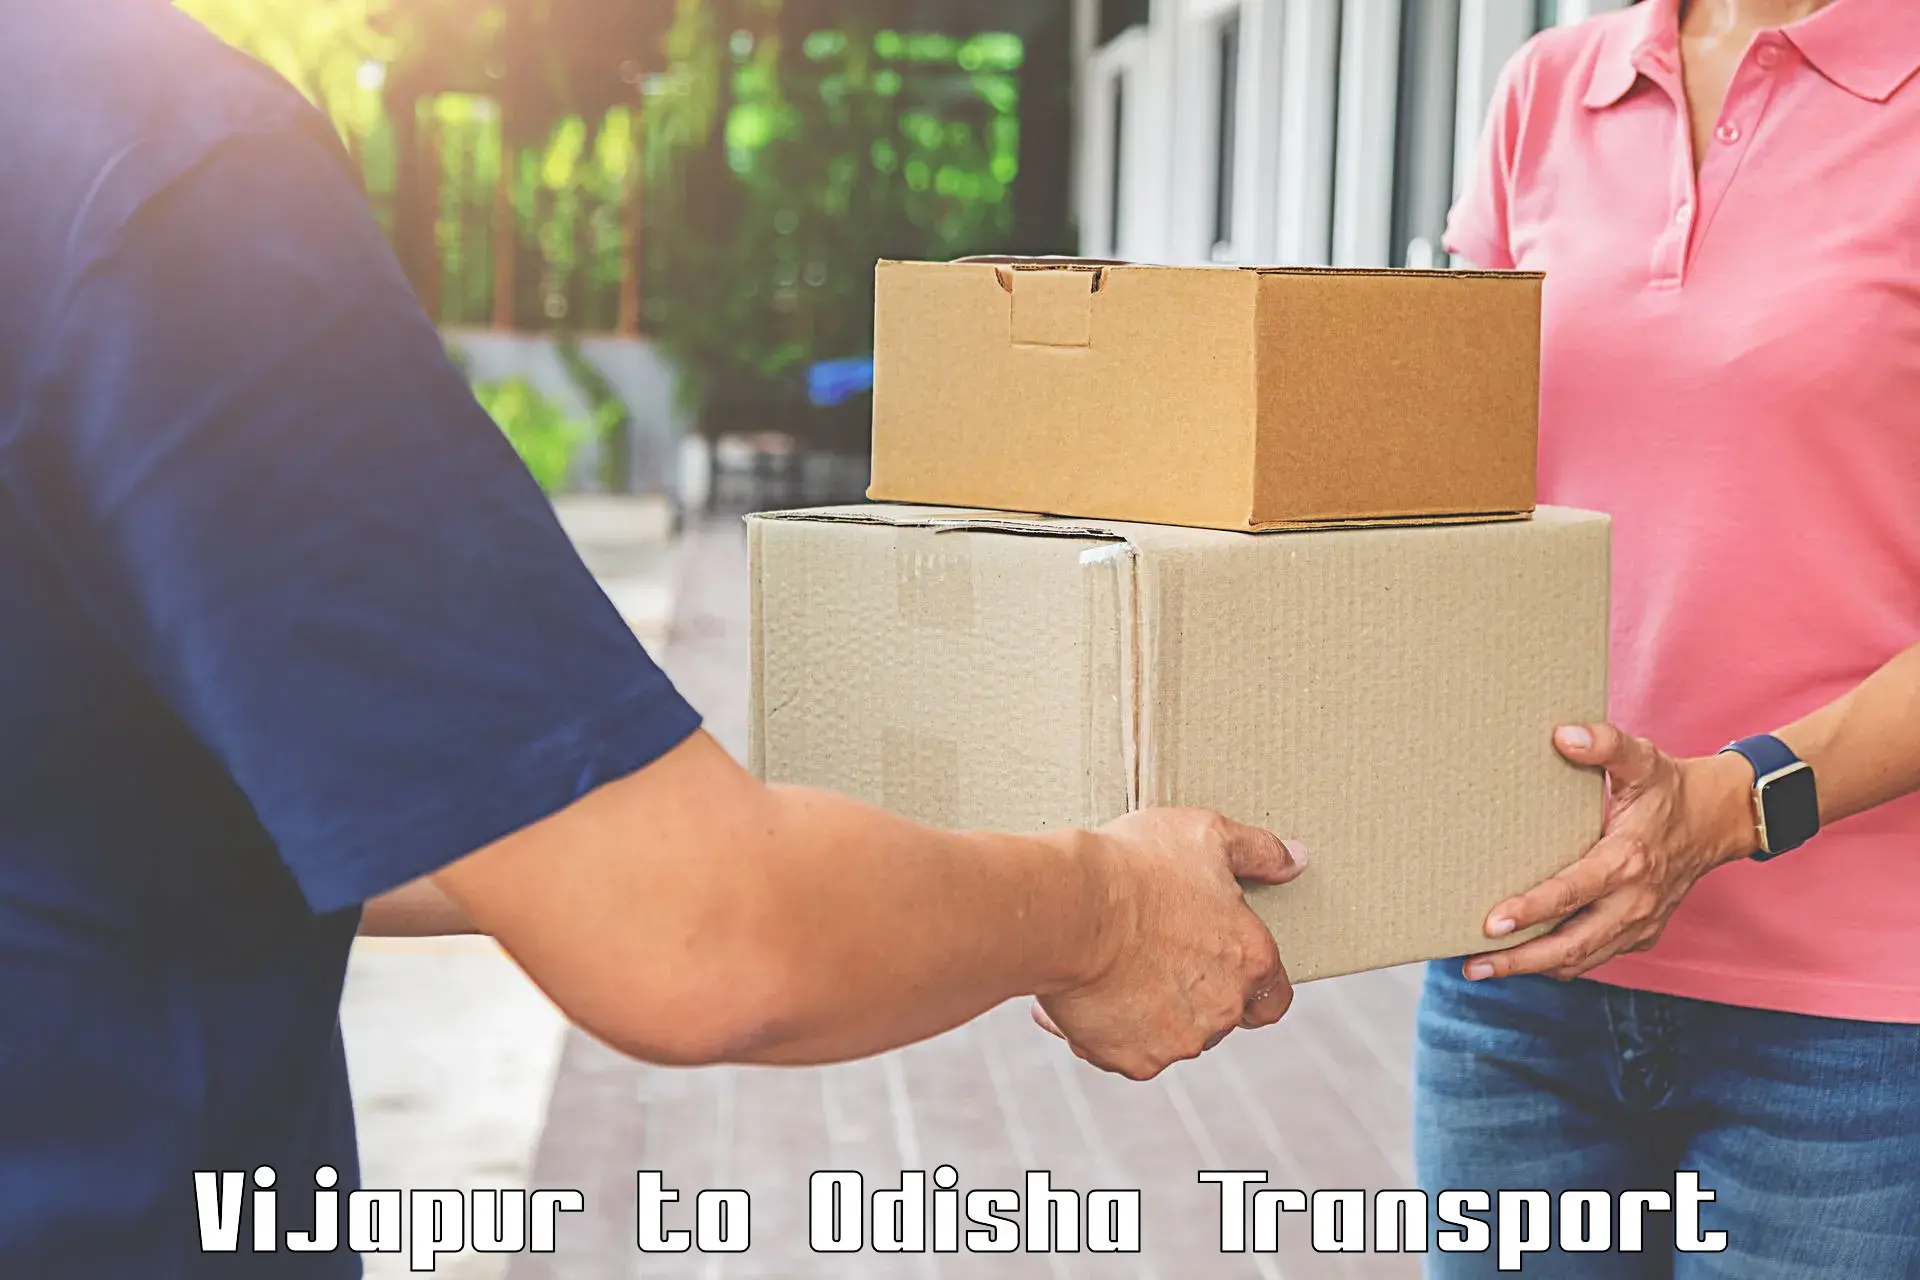 Furniture transport service Vijapur to Barkote